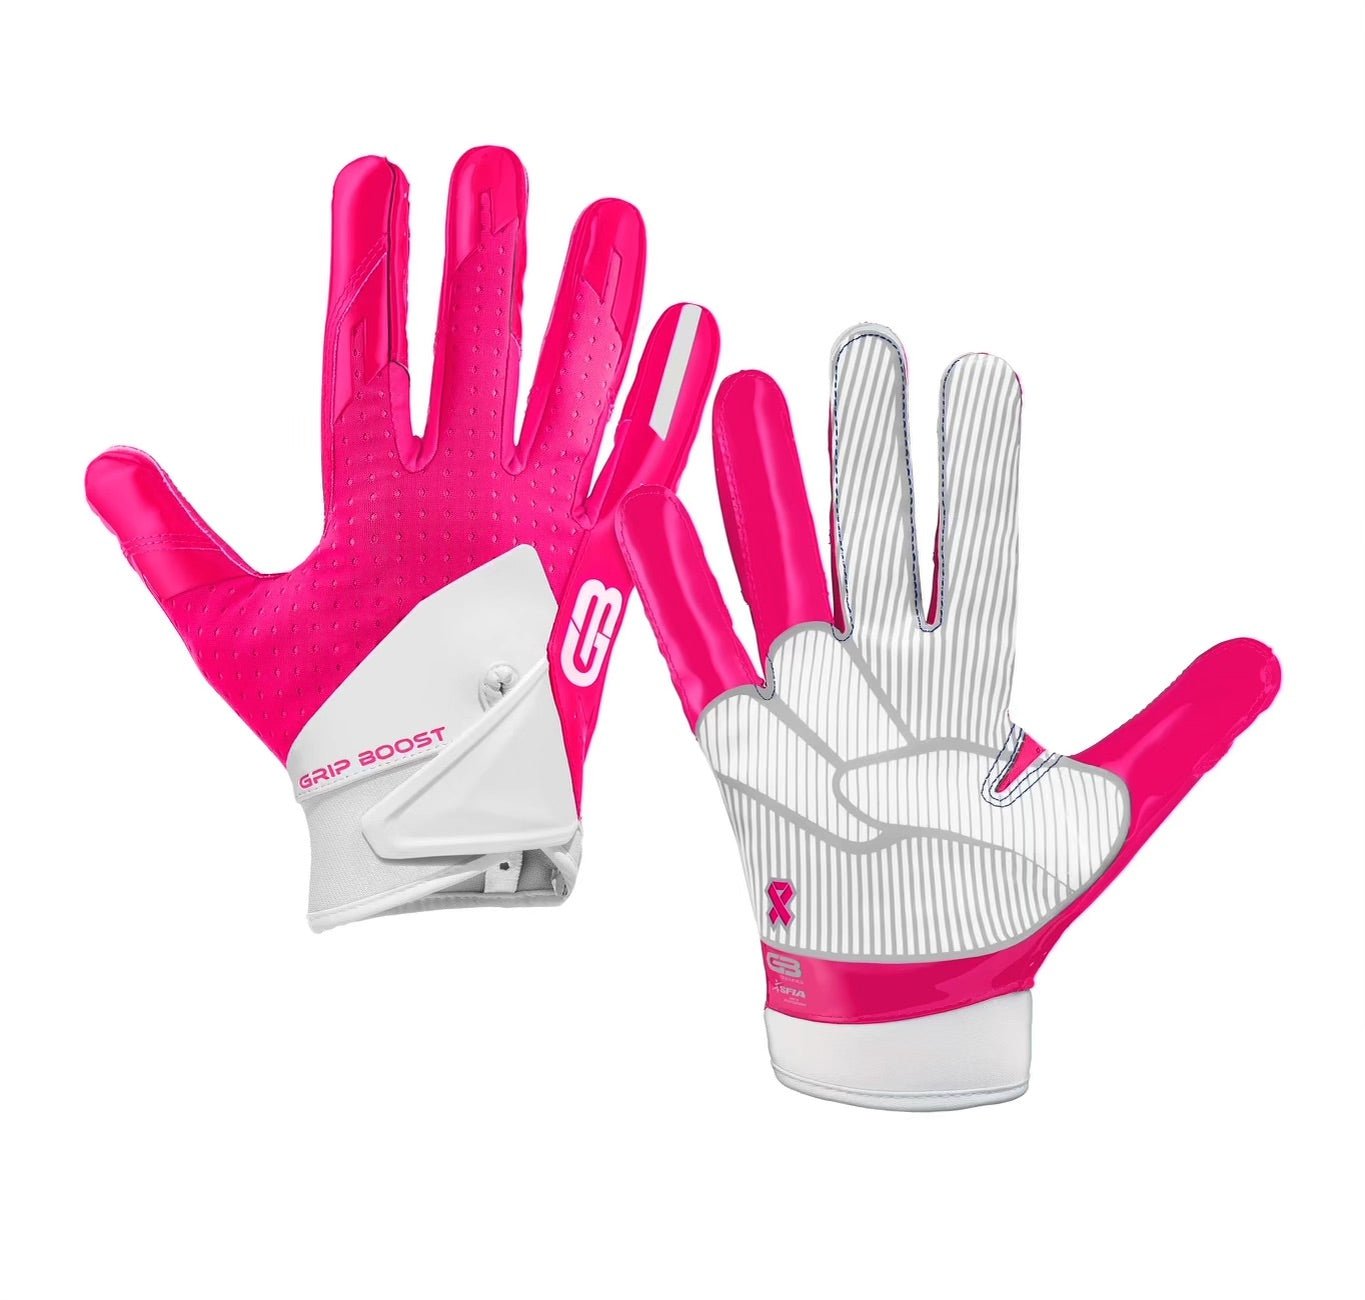 Grip Boost Cheetah Stealth 5.0 Football Gloves - Adult Sizes, White Cheetah / Medium